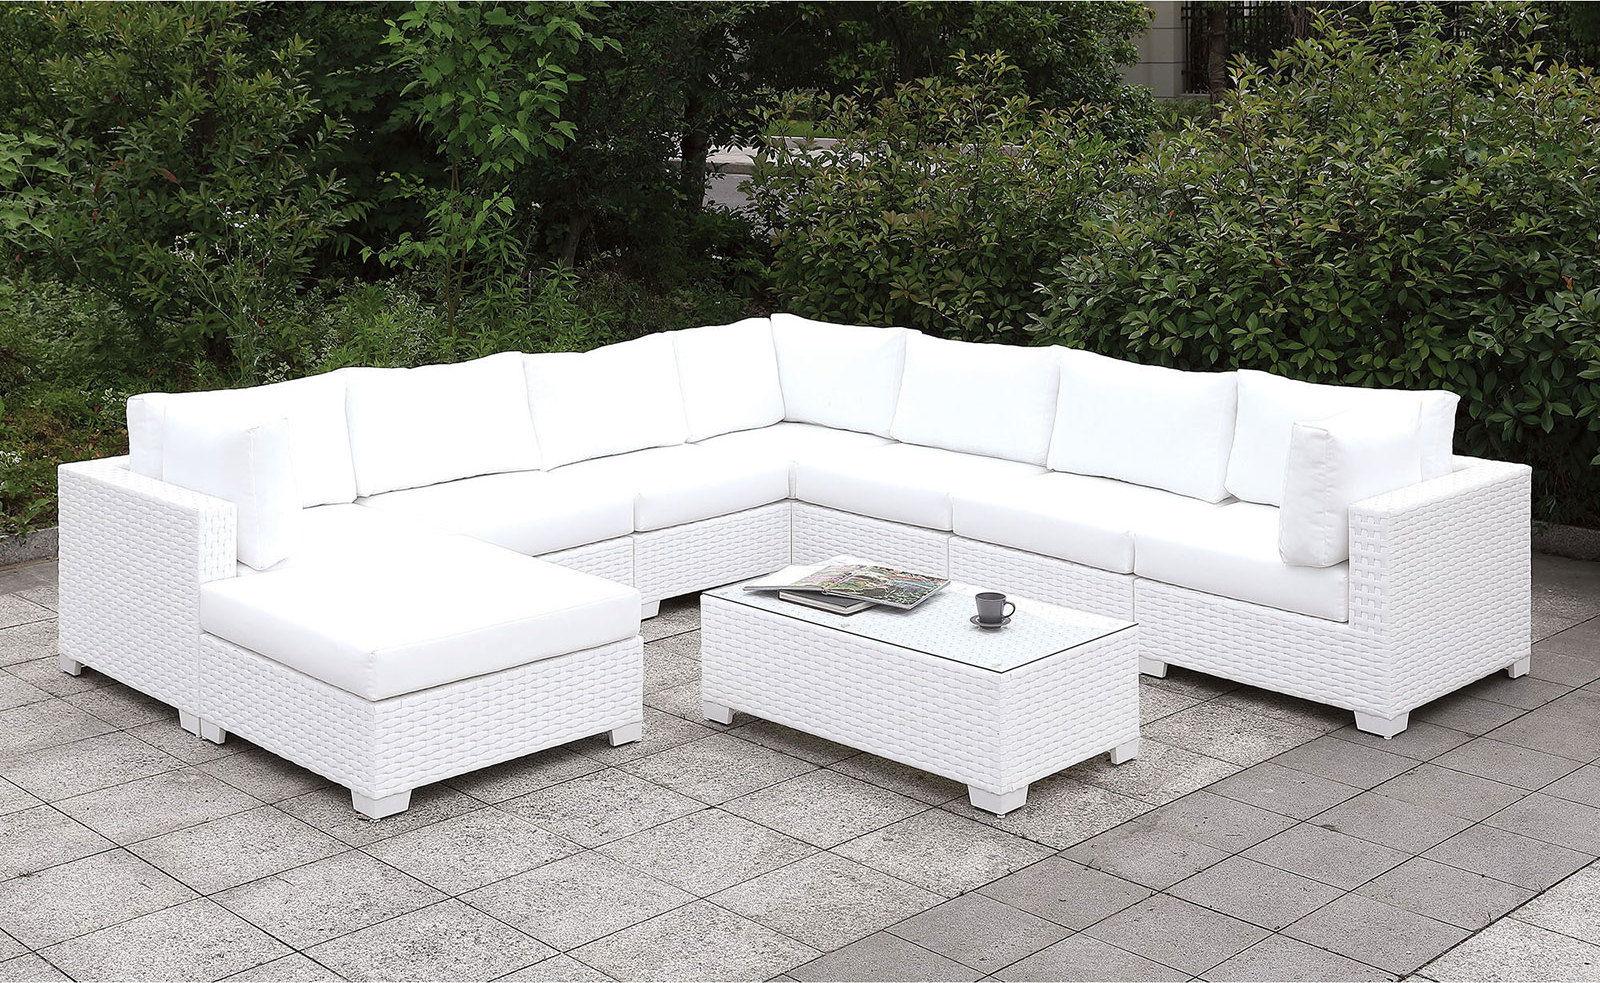 Furniture of America - Somani - Bench - White - 5th Avenue Furniture